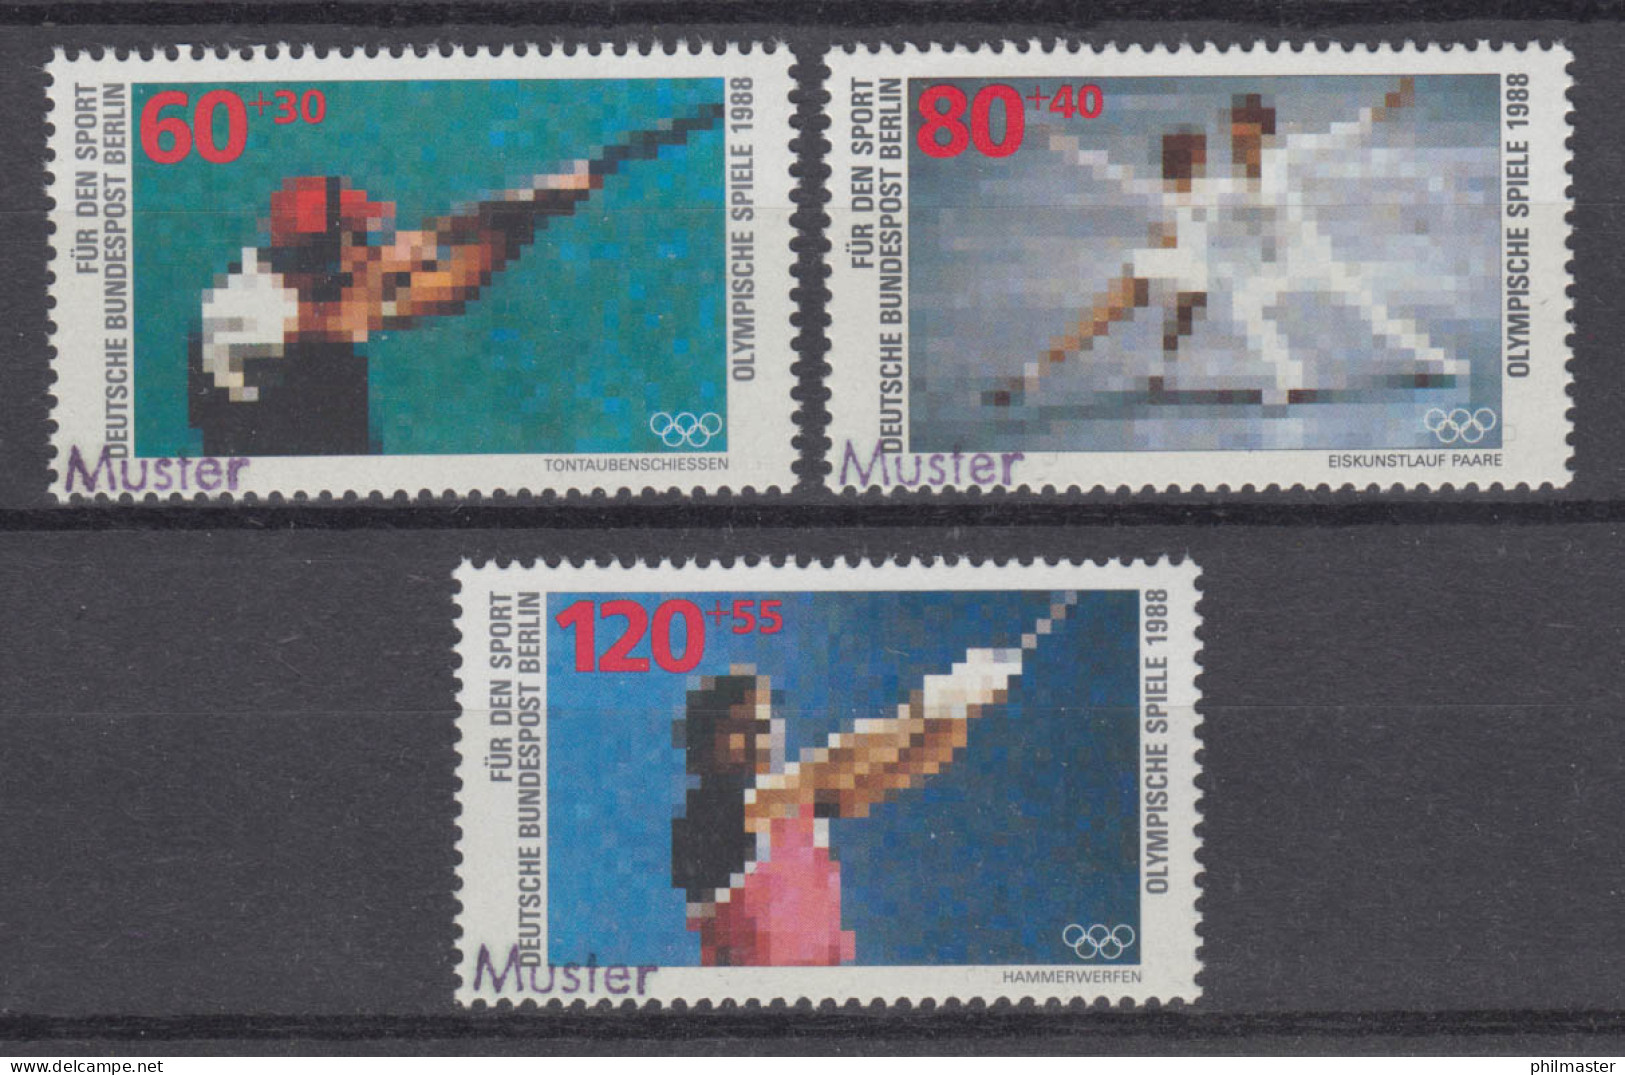 801-803 Tontaubenschießen Eiskunstlauf Hammerwerfen, Satz Mit MUSTER-Aufdruck - Unused Stamps